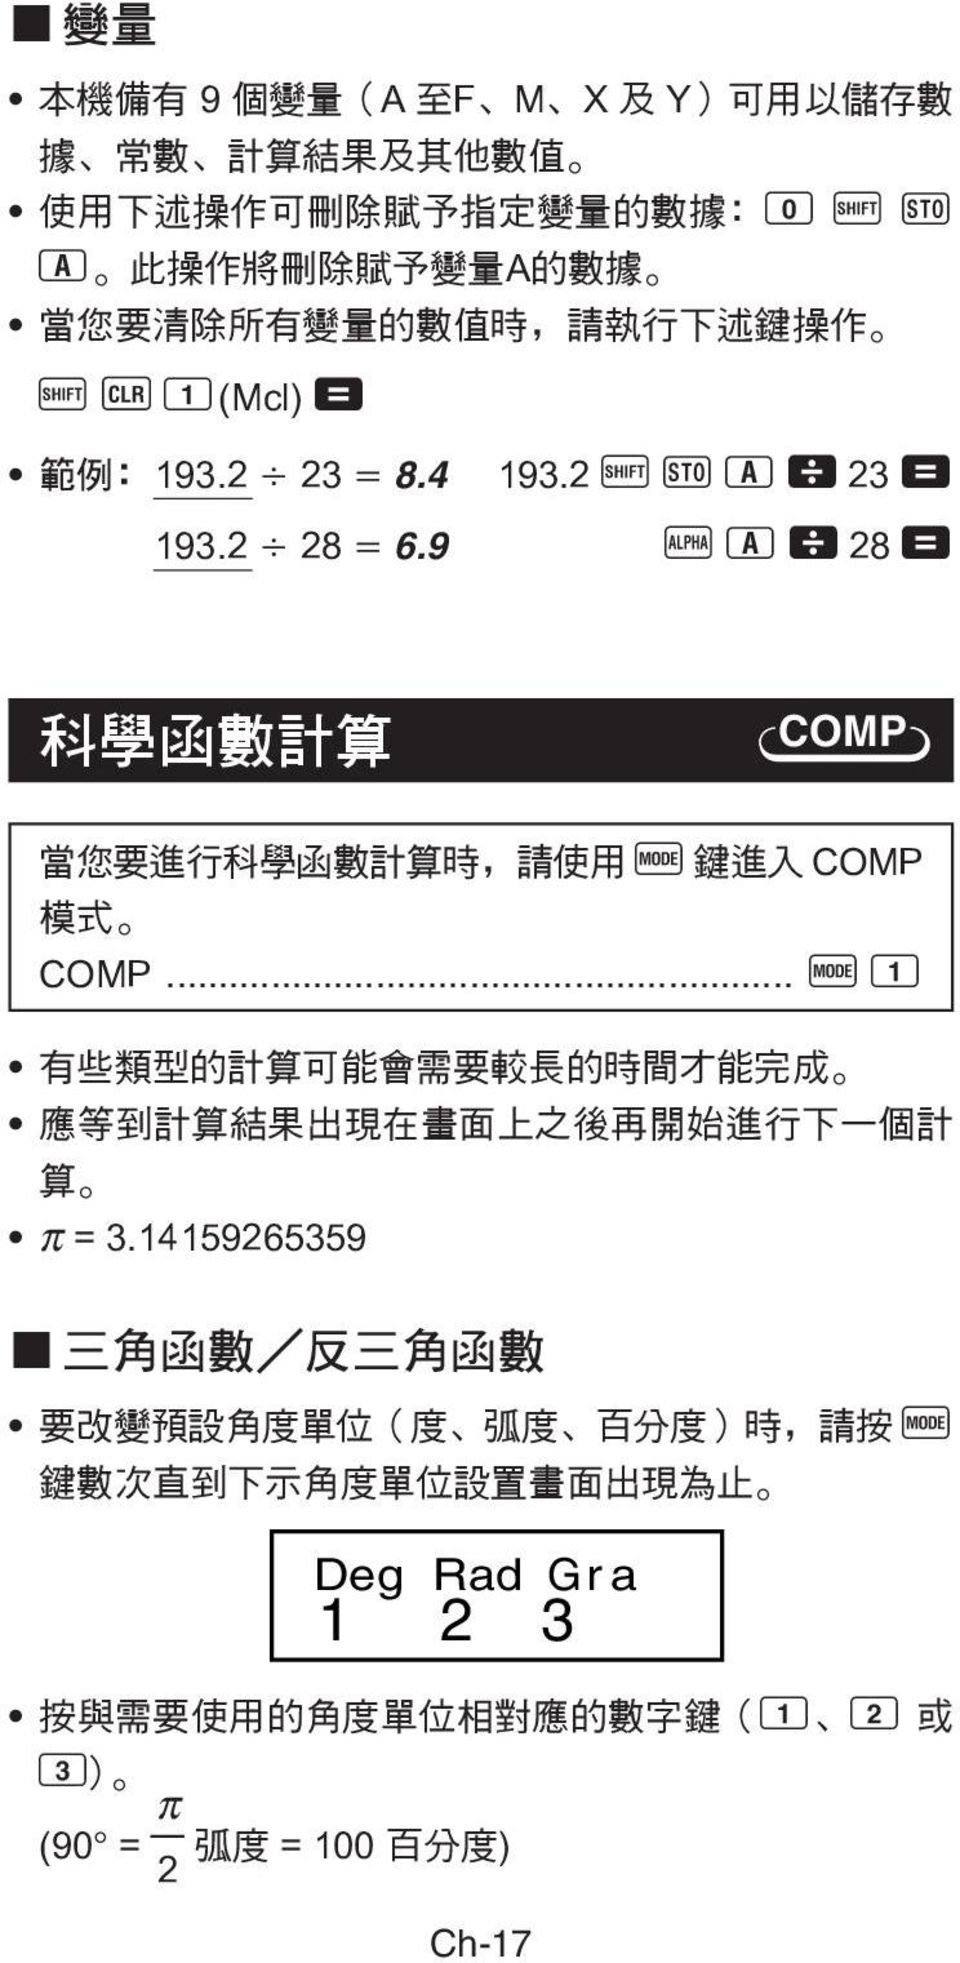 9 p 1 \ 28 = 科 學 函 數 計 算 COMP 當 您 要 進 行 科 學 函 數 計 算 時, 請 使 用 F 鍵 進 入 COMP 模 式 - COMP.